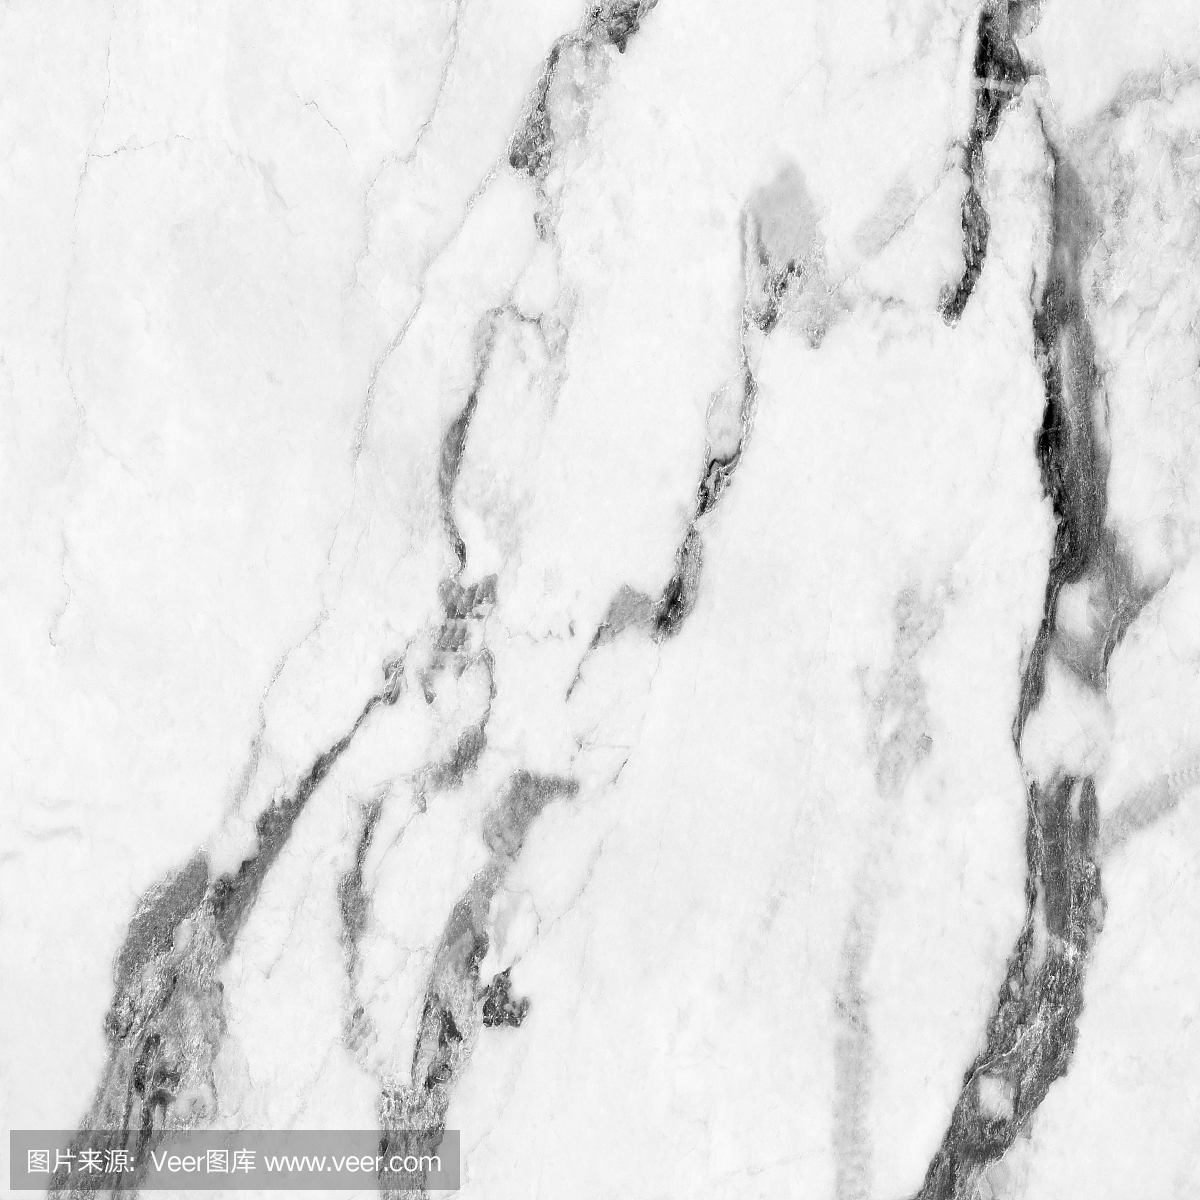 白色大理石自然图案为背景,抽象的天然大理石黑白图案为设计